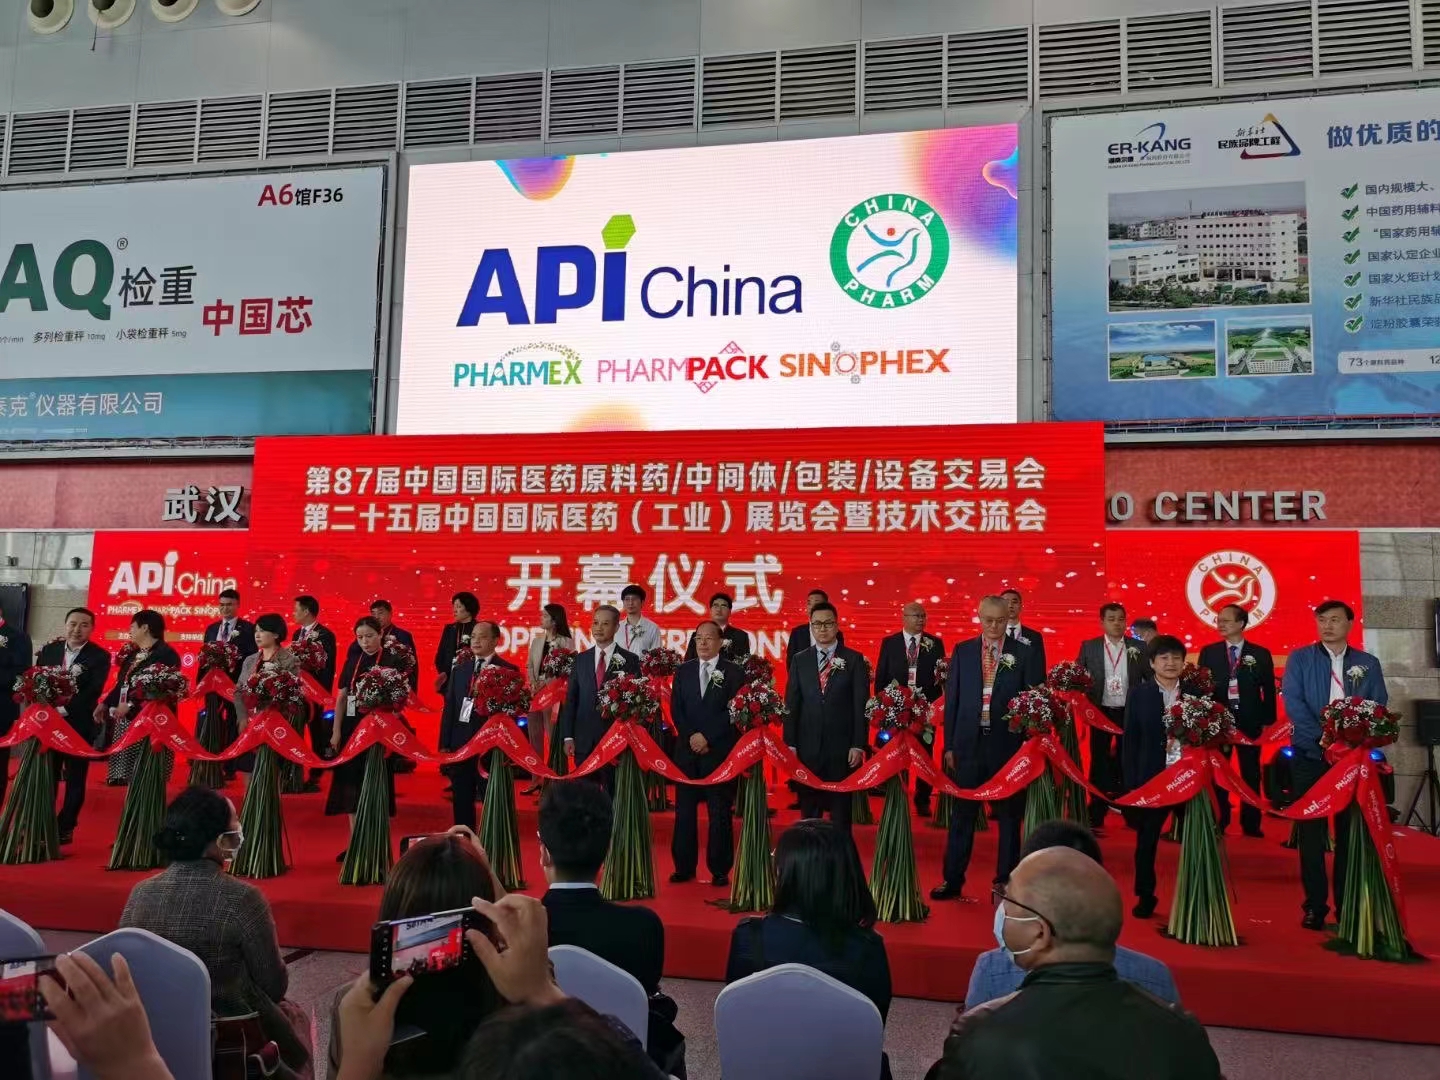 87-ші Қытай халықаралық фармацевтикалық Apis/Intermediates/орау/жабдық жәрмеңкесі (API China) -Shanghai Ruifu Chemical Co., Ltd. клиенттермен бірге қатысады.